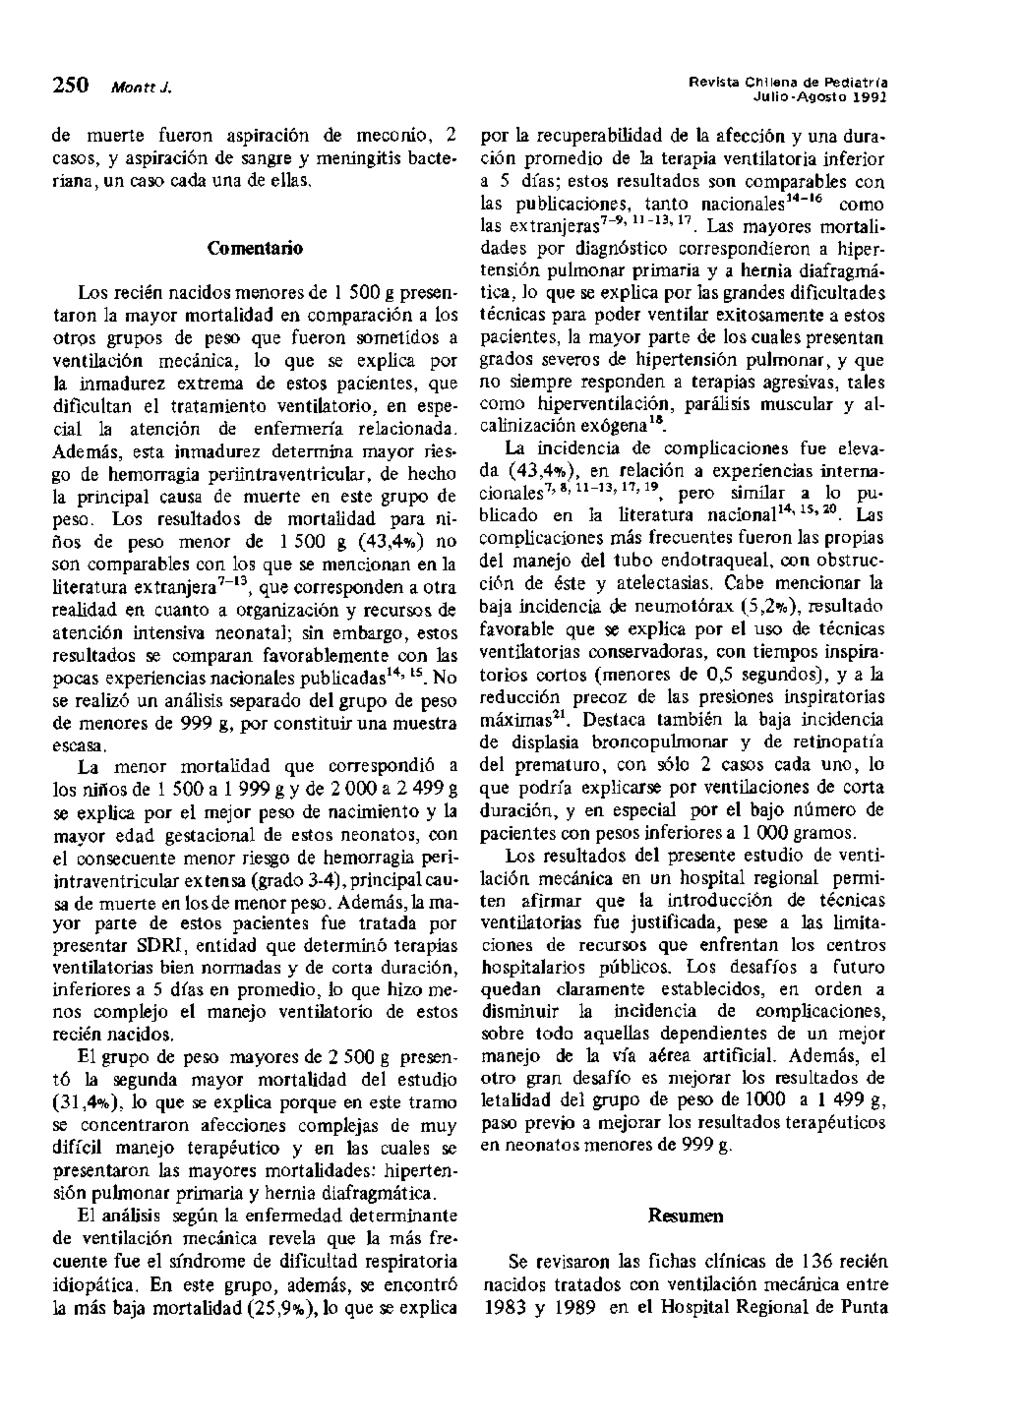 50 Monti J. Revfsta Chilena de Pediatn'a Julio-Agosto 99 de muerte fueron aspiracion de meconio, cases, y aspiracion de sangre y meningitis bacteriana, un caso cada una de ellas.